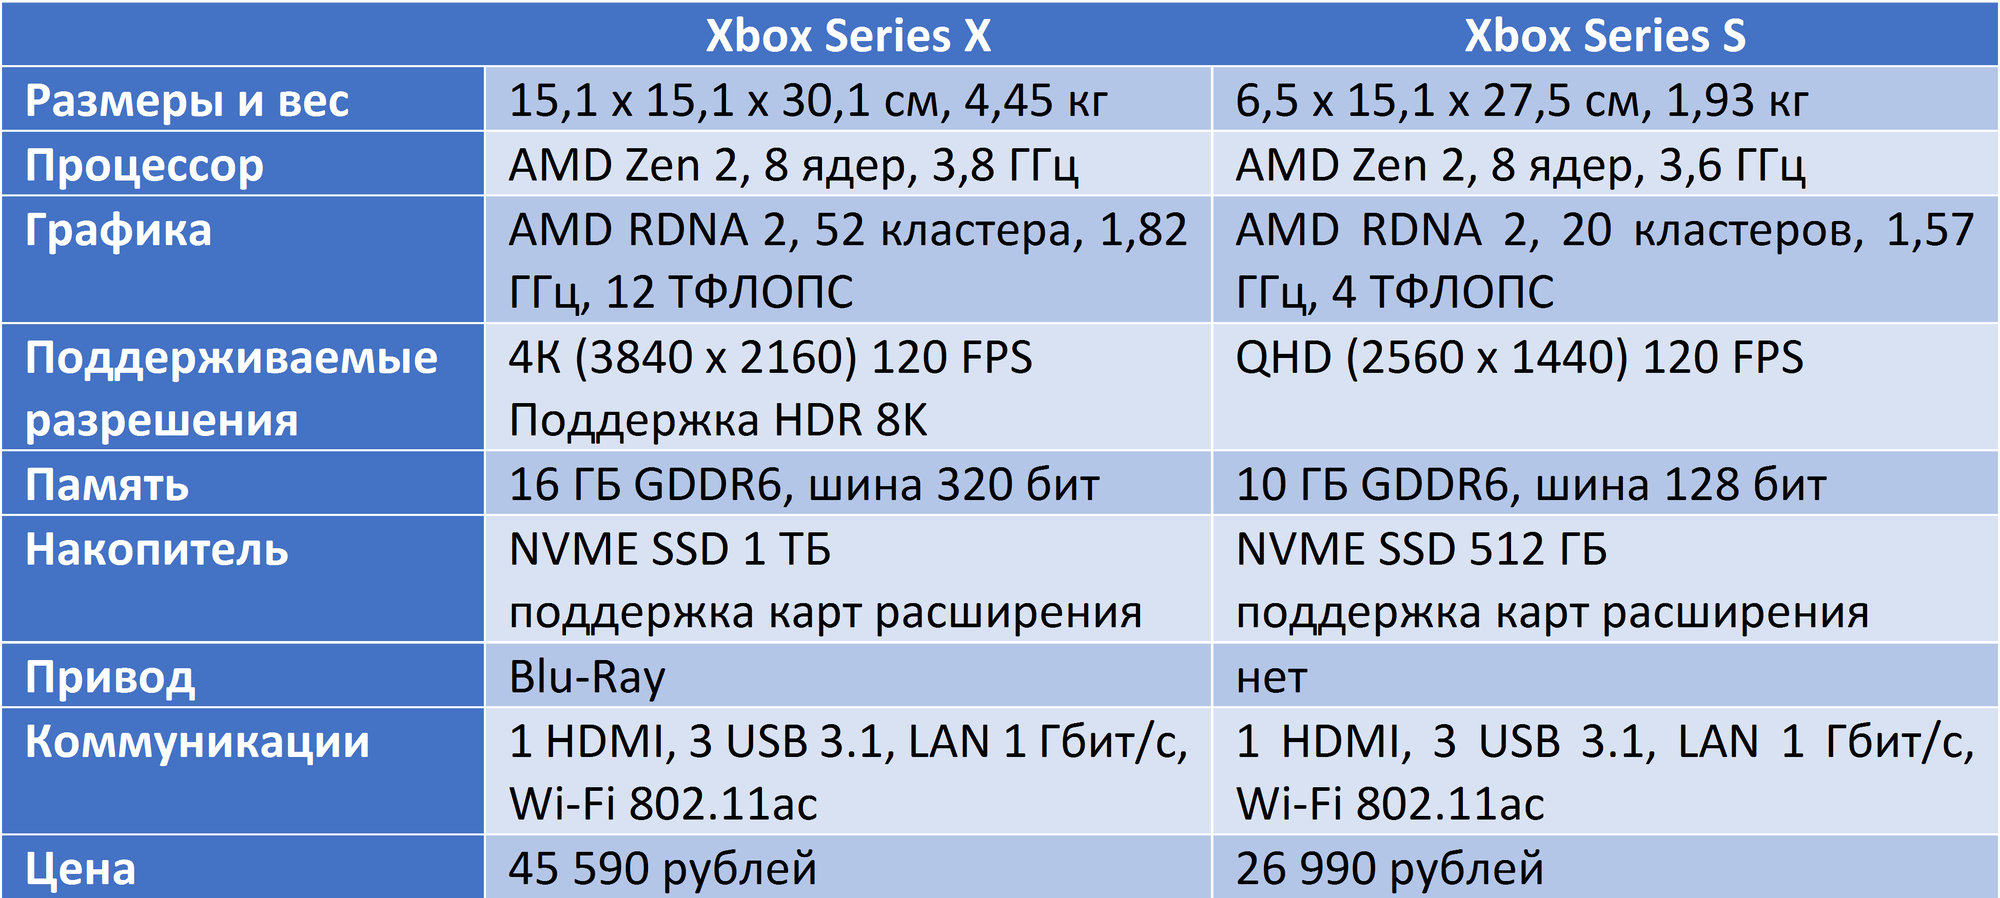 Xbox series s x сравнение